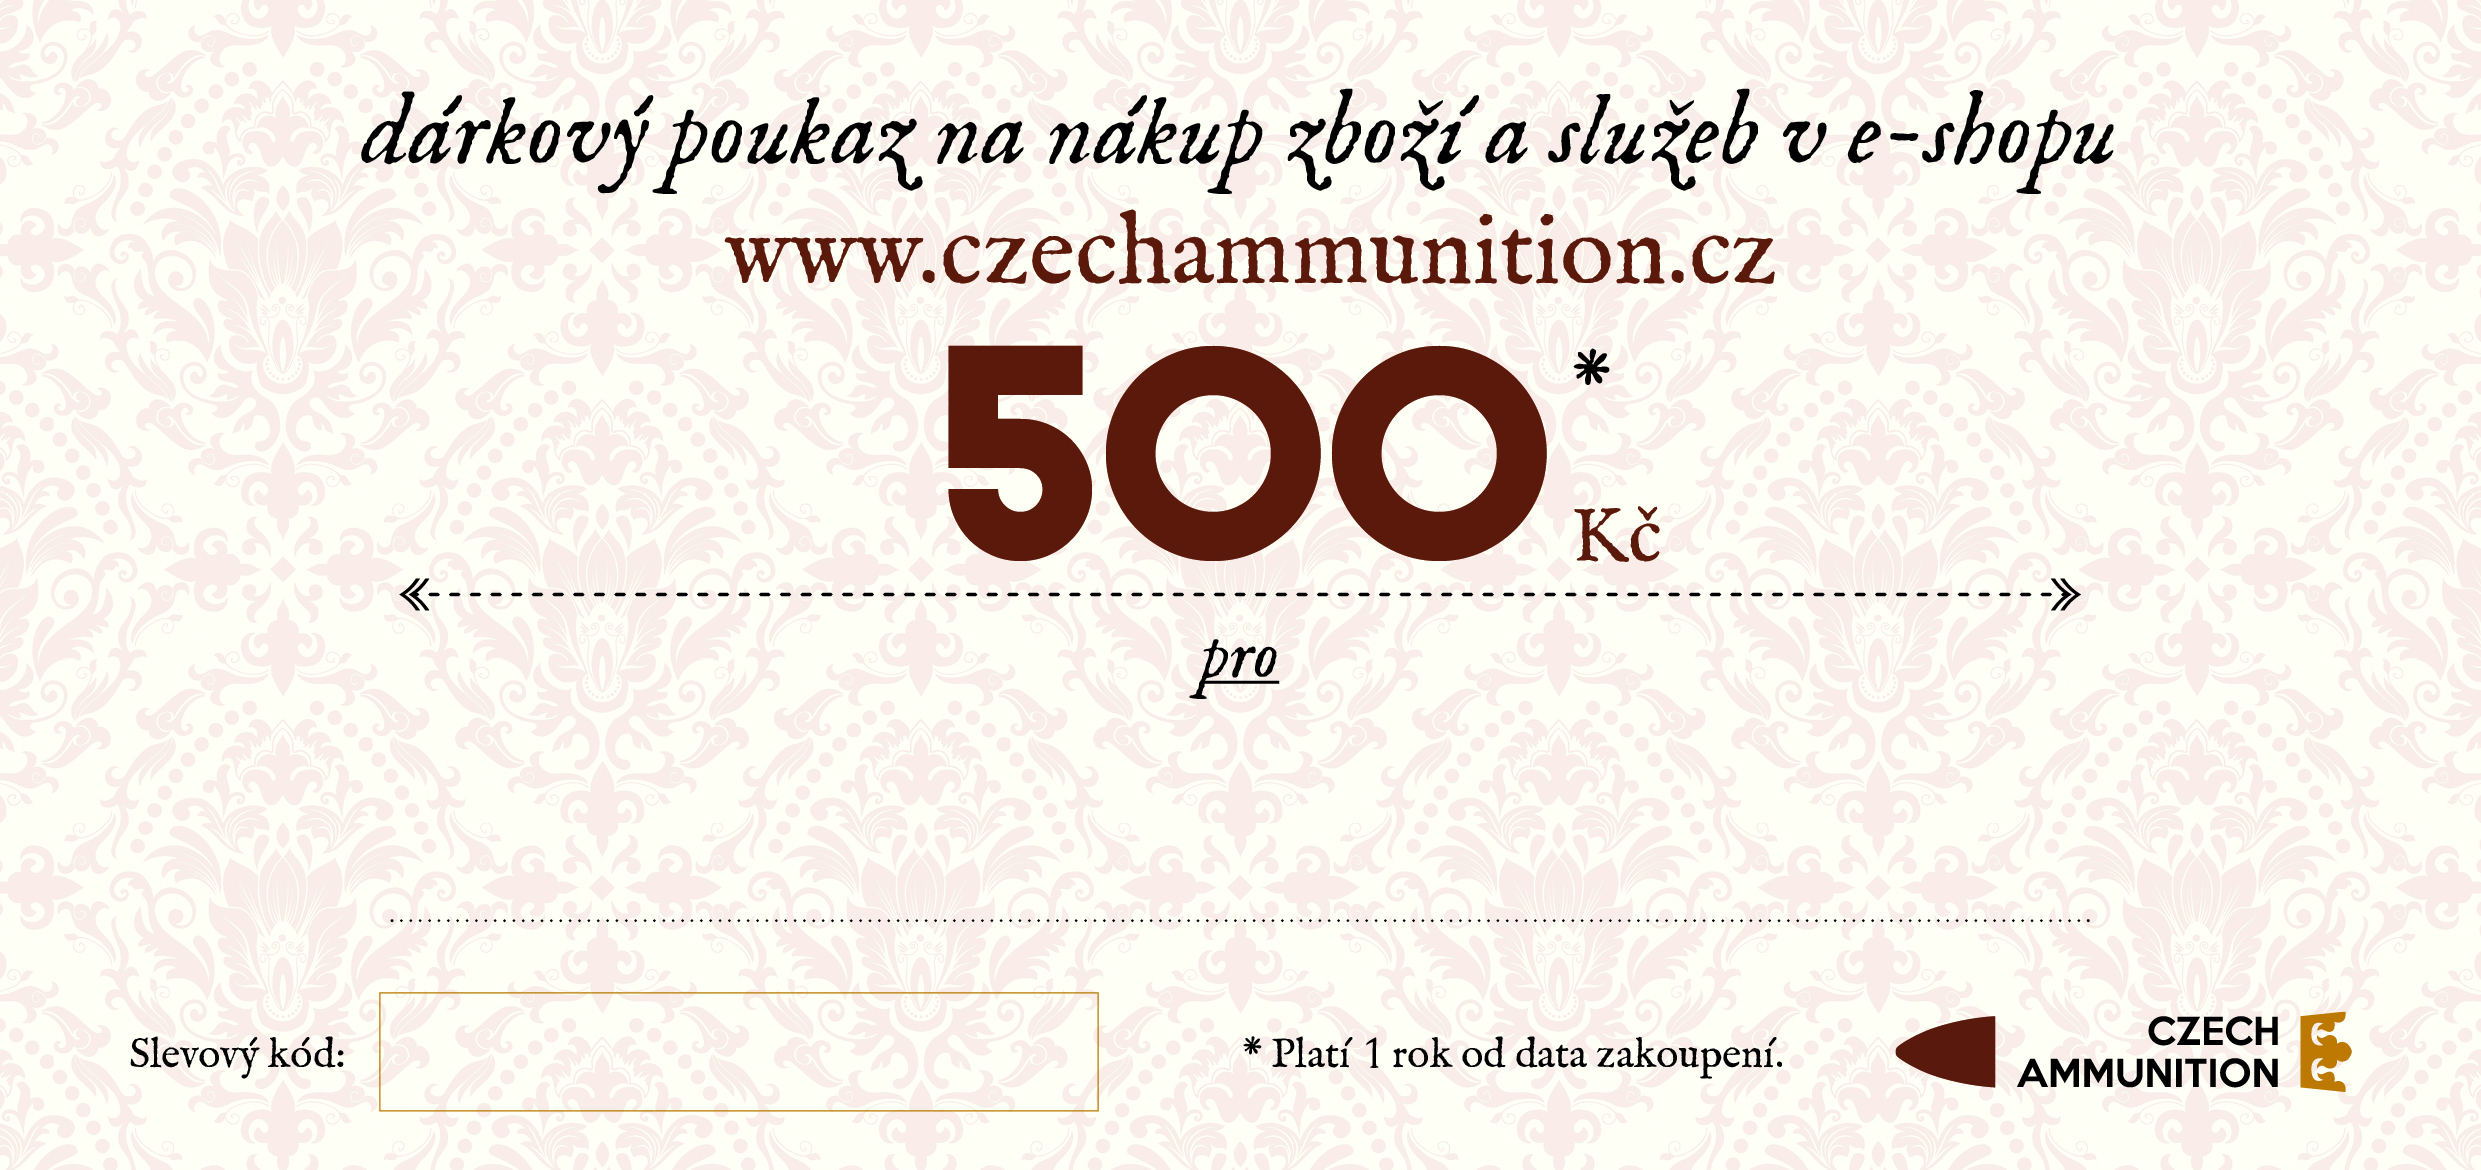 Dárkový poukaz na nákup v e-shopu www.czechammunition.cz v hodnotě 500 Kč